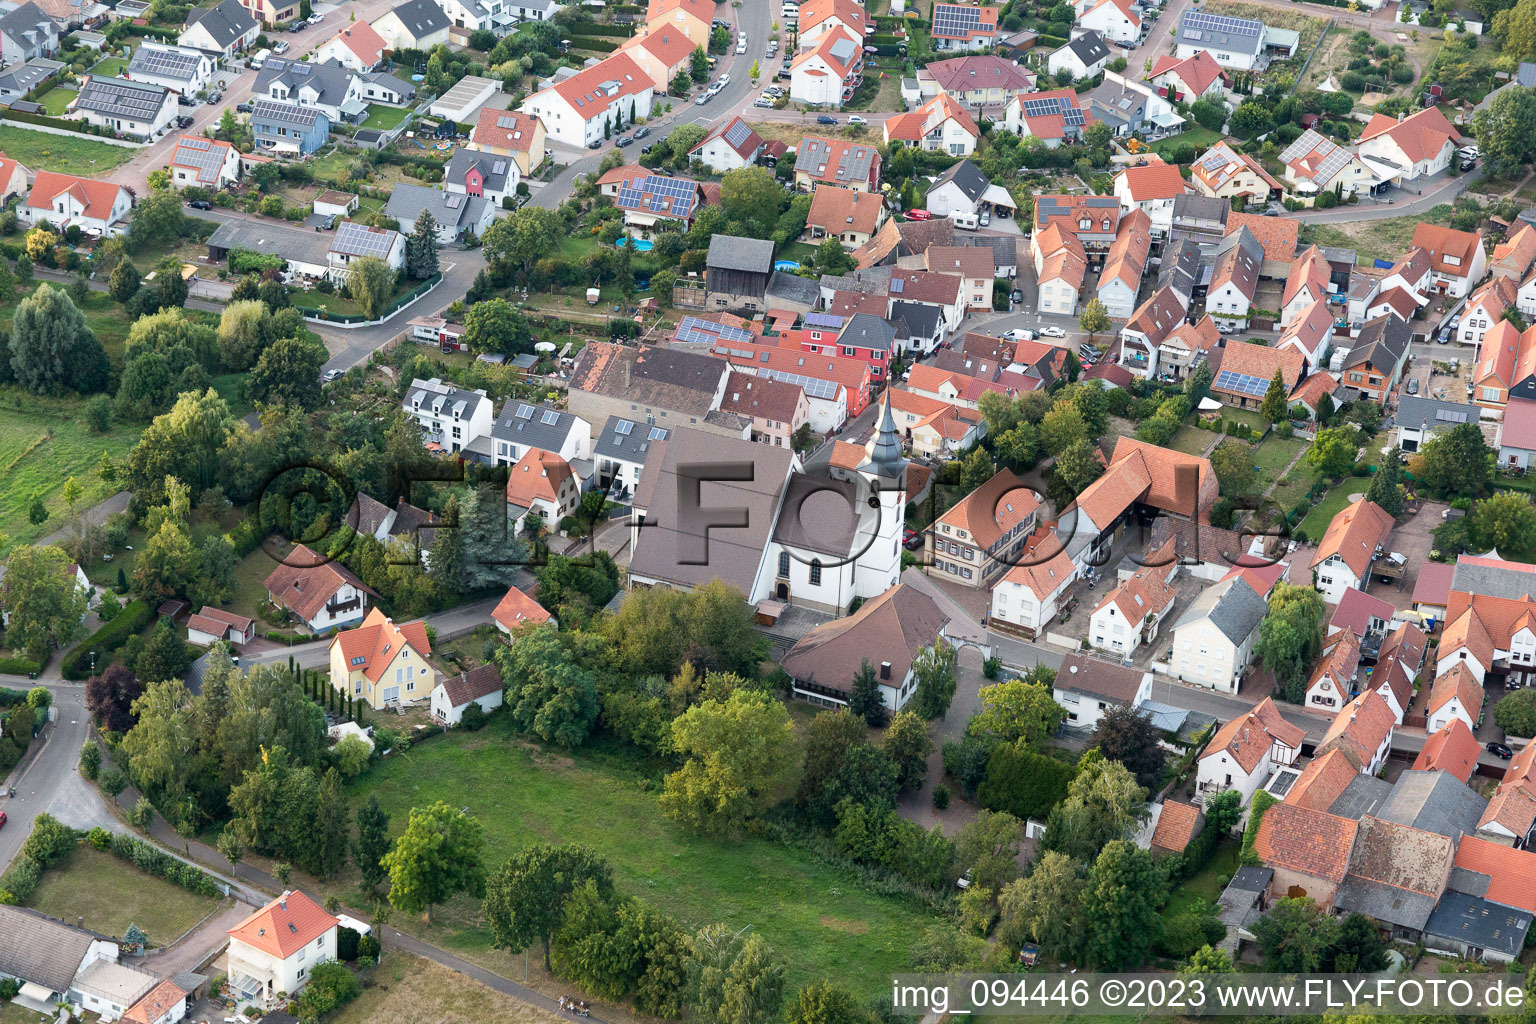 Offenbach an der Queich dans le département Rhénanie-Palatinat, Allemagne du point de vue du drone